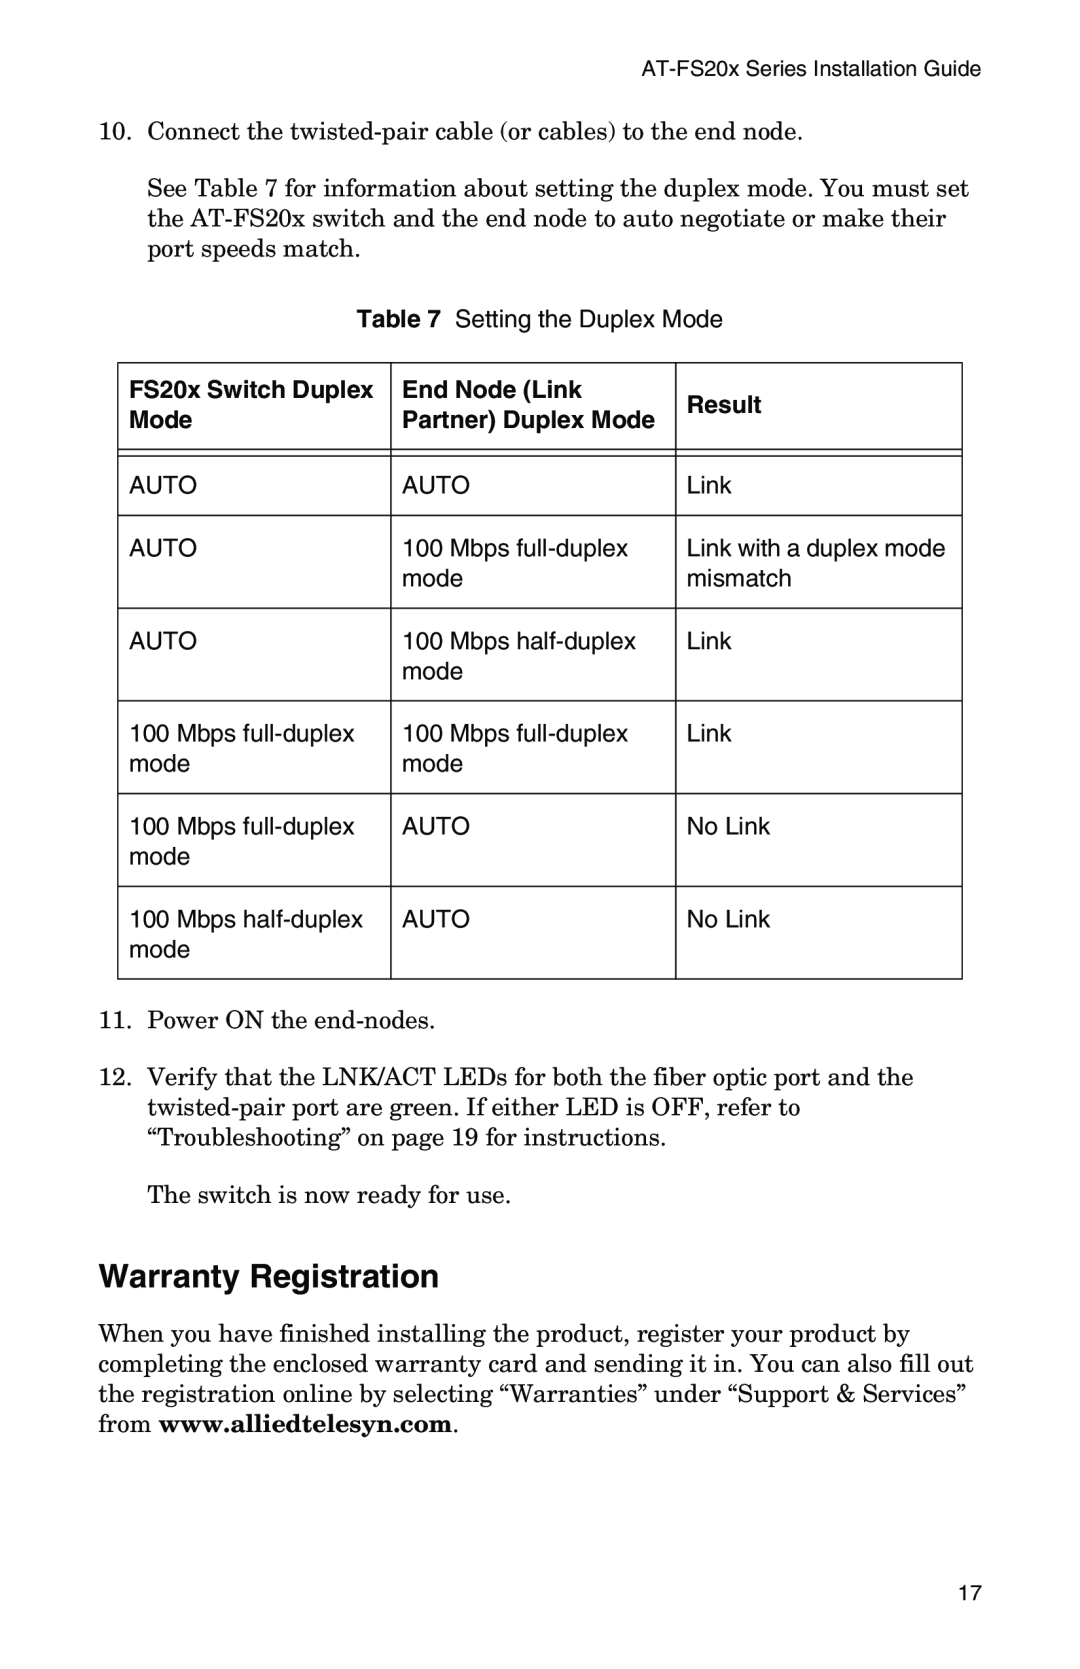 IBM AT-FS202SC/FS4, AT-FS202SC/FS2, AT-FS202SC/FS1, AT-FS201, AT-FS202SC/FS3 manual Warranty Registration 